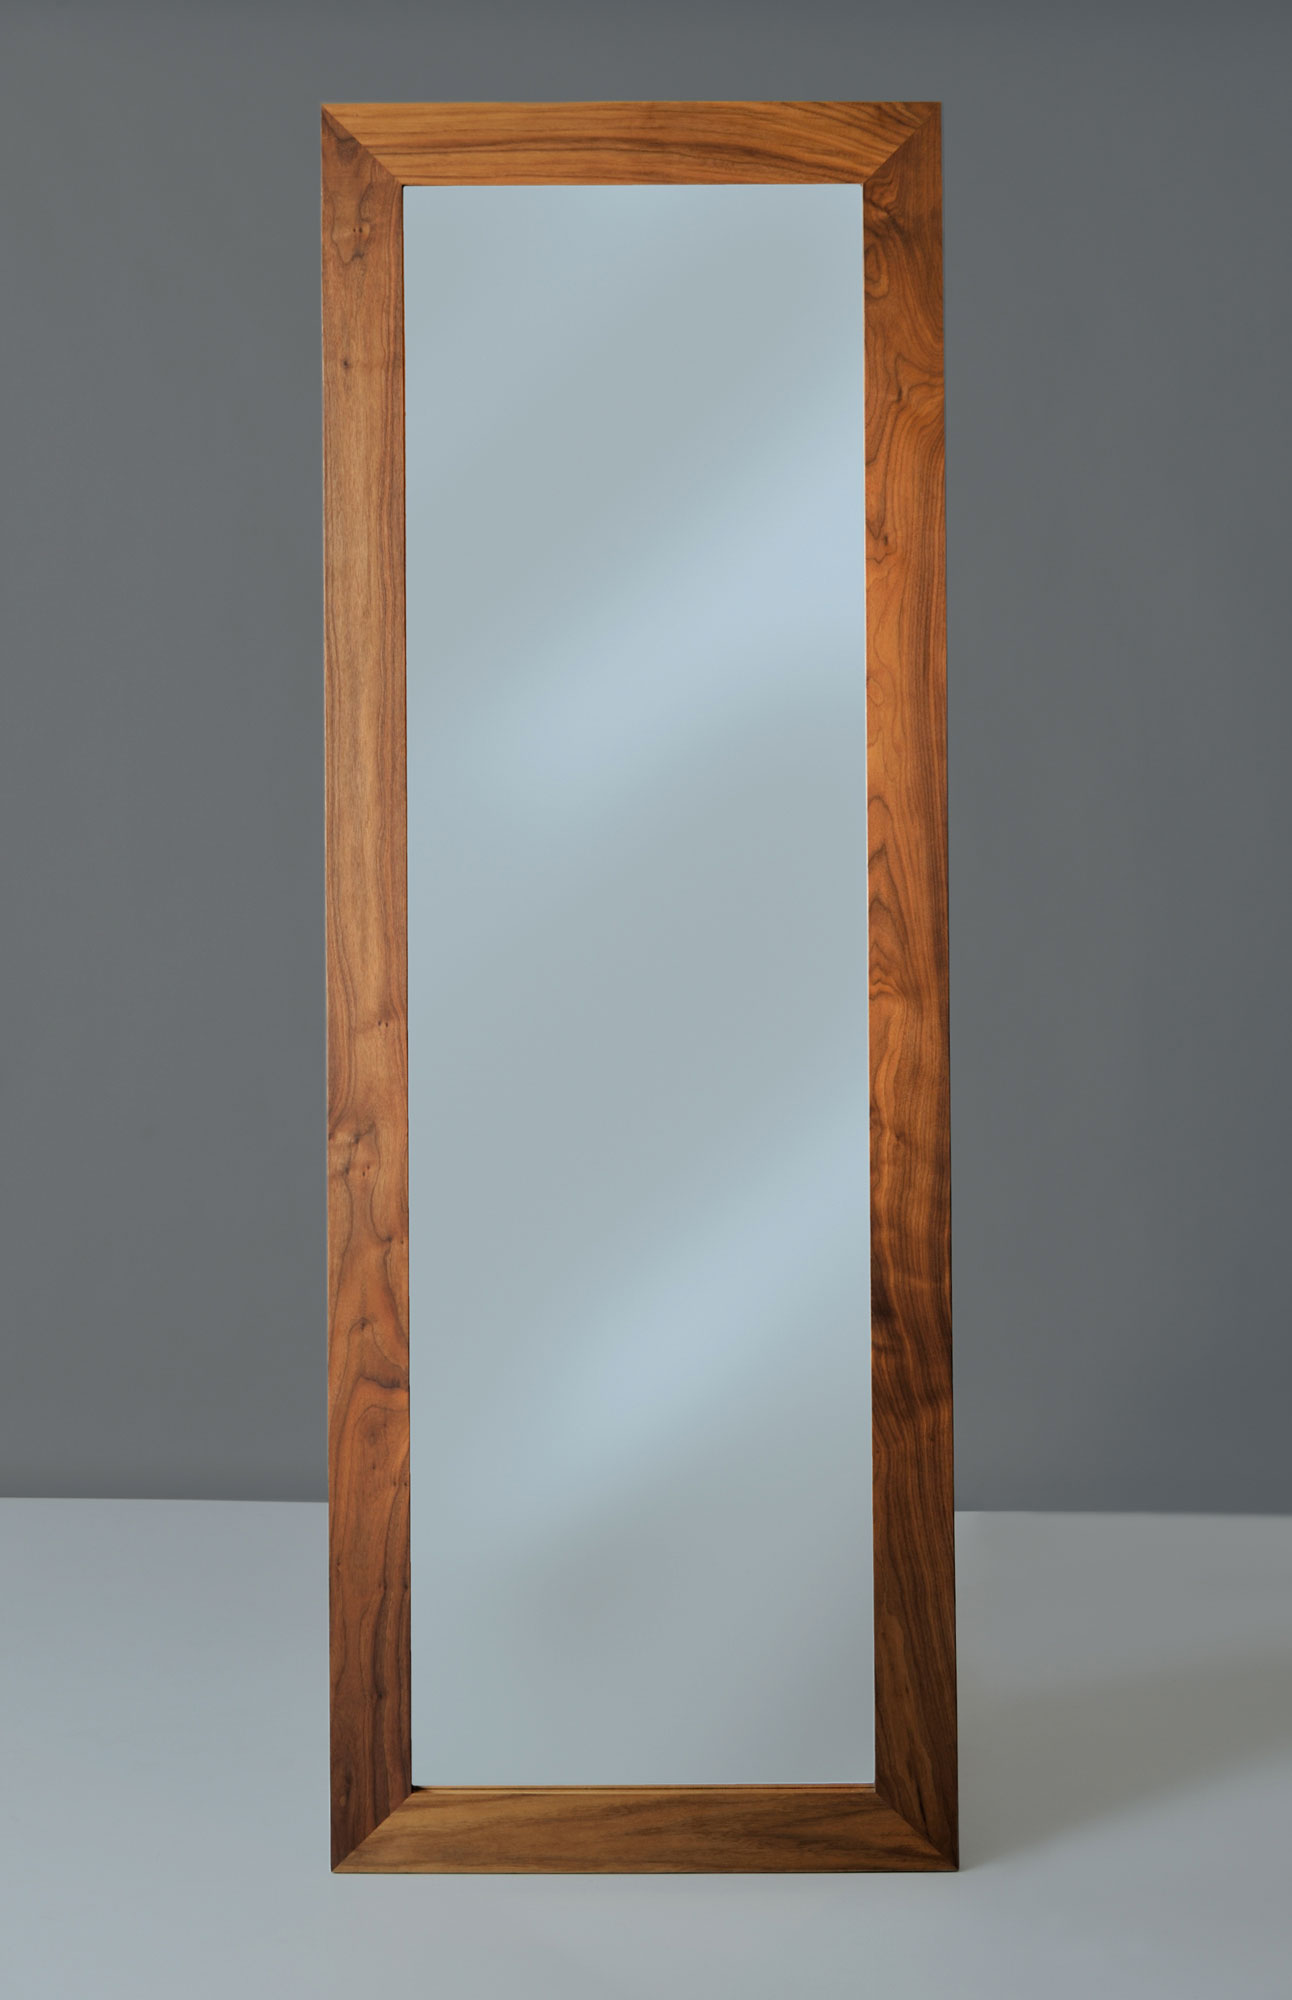 Massiver Holzspiegel Zubehör SPIEGEL nef9504 Maßgefertigt aus Massivholz von vitamin design